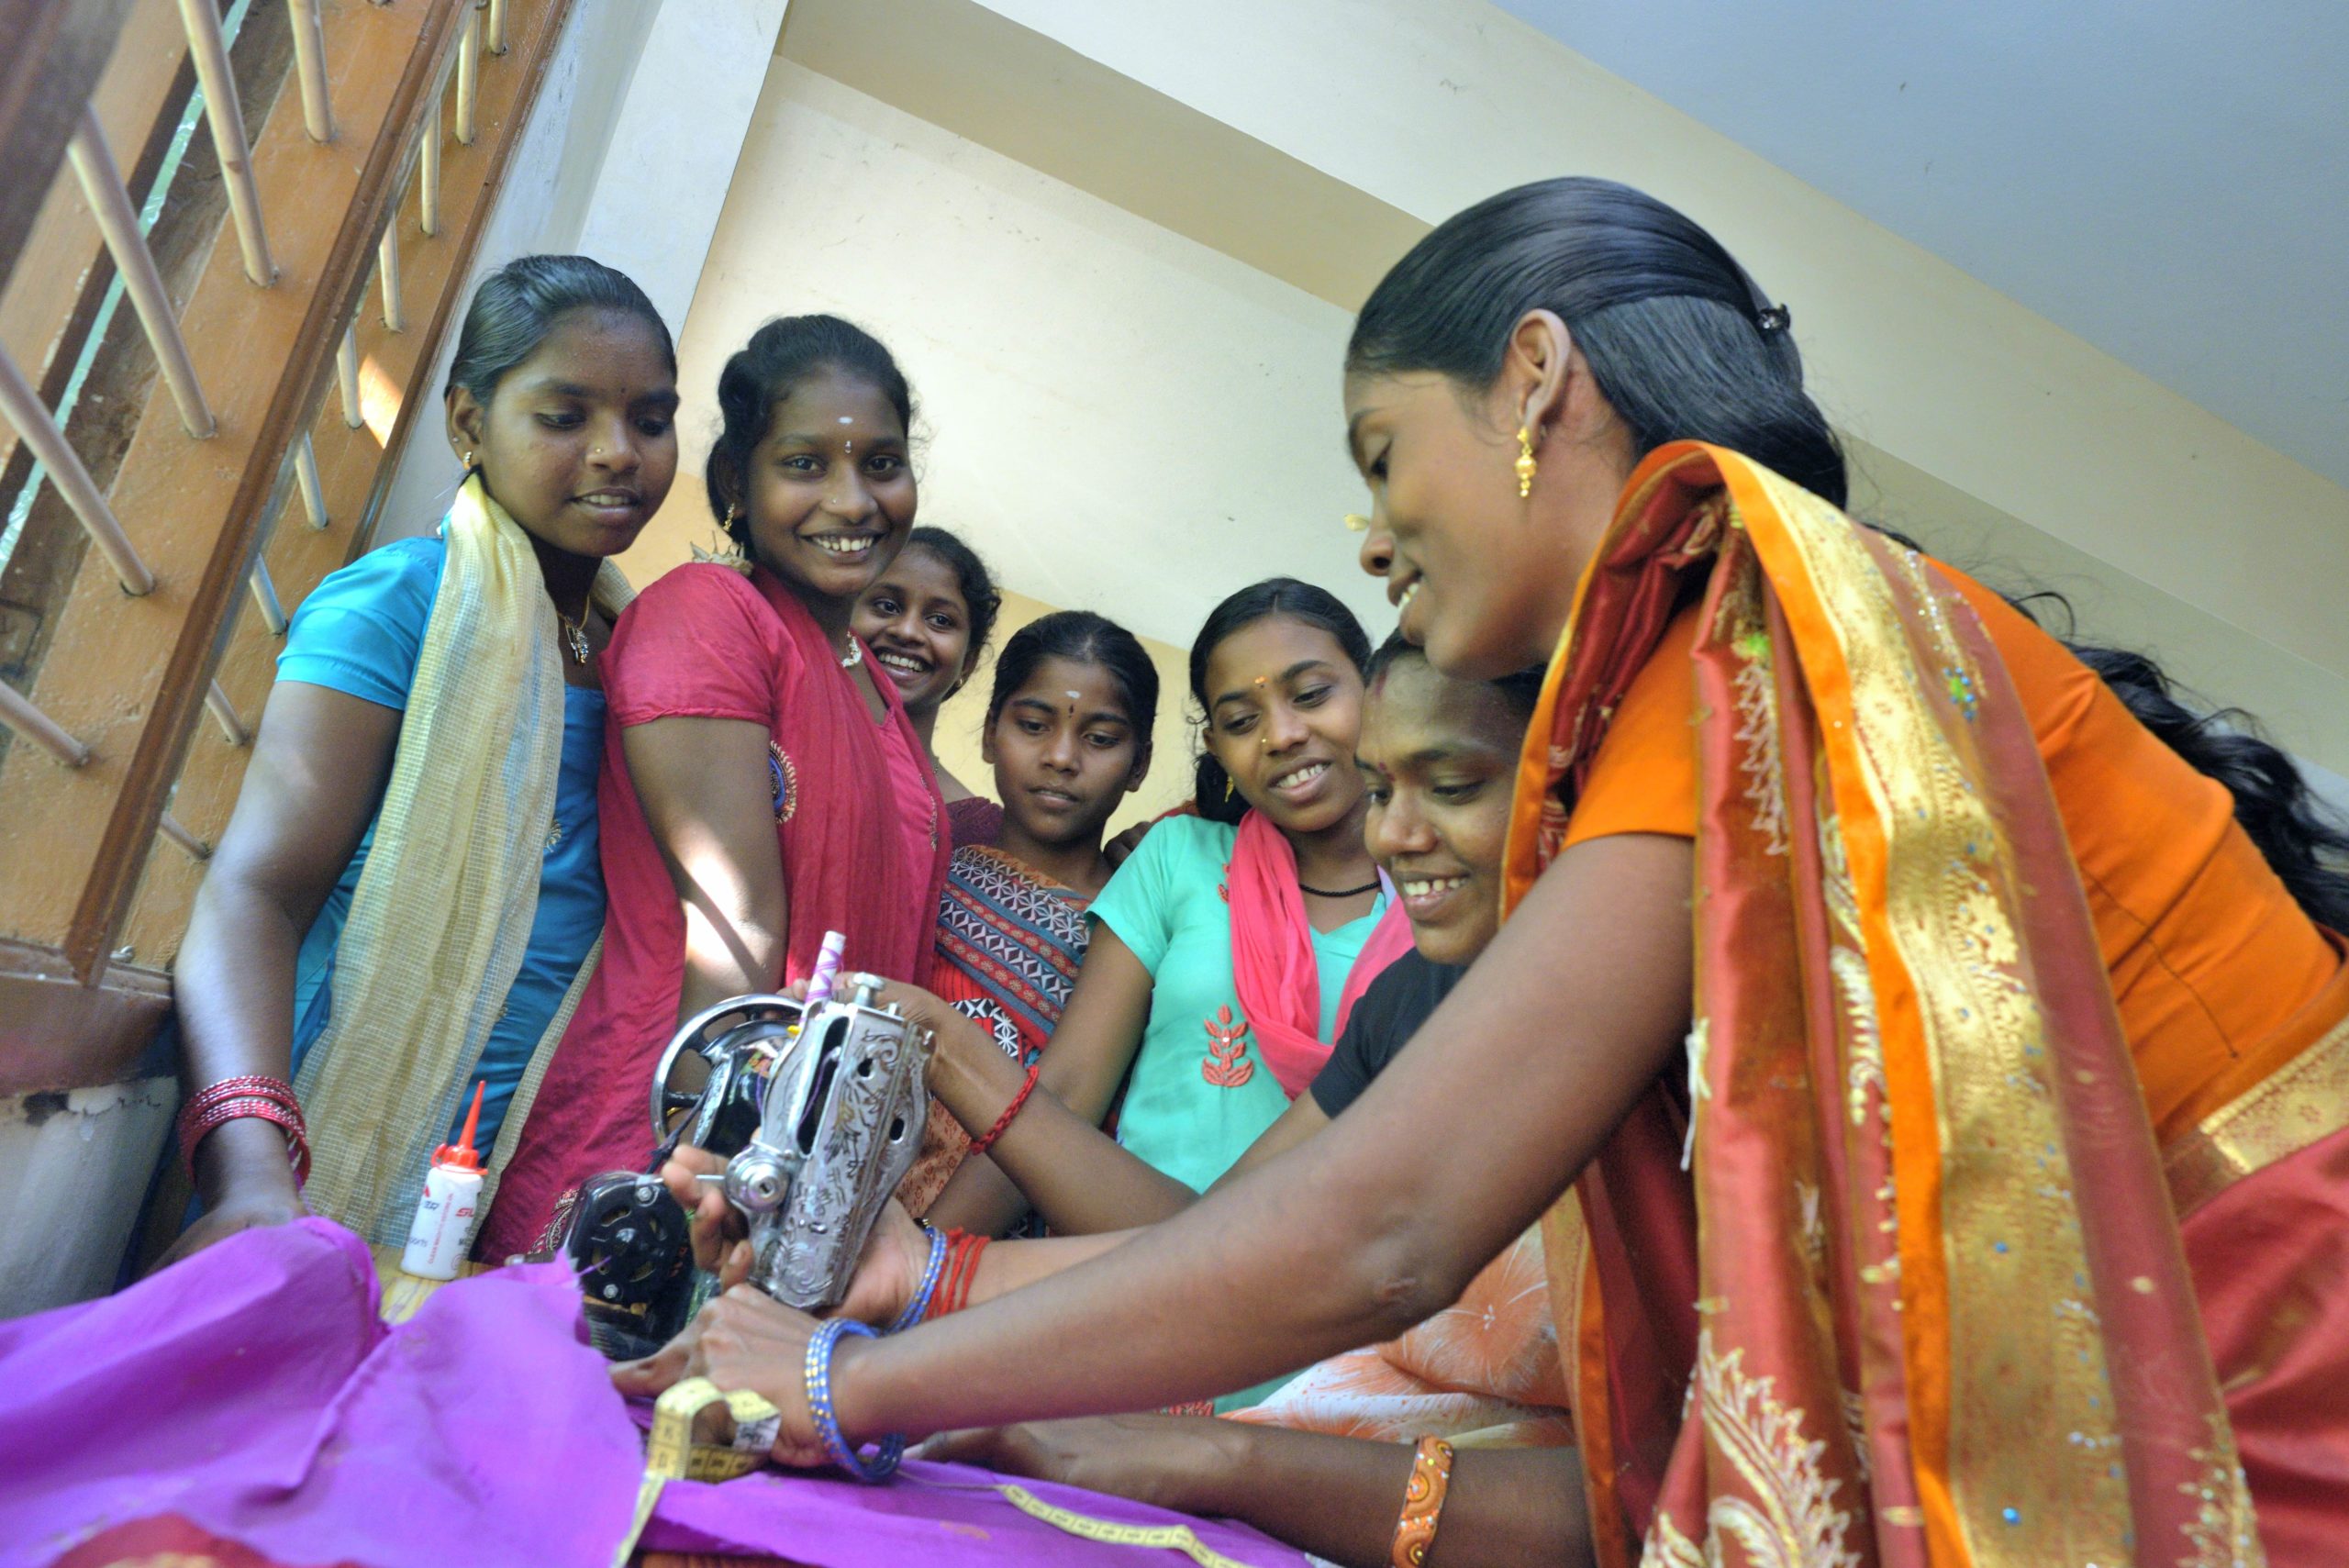 Les défis rencontrés par les femmes en Inde et le rôle des groupes Emmaüs pour aider les femmes et lutter pour leurs droits